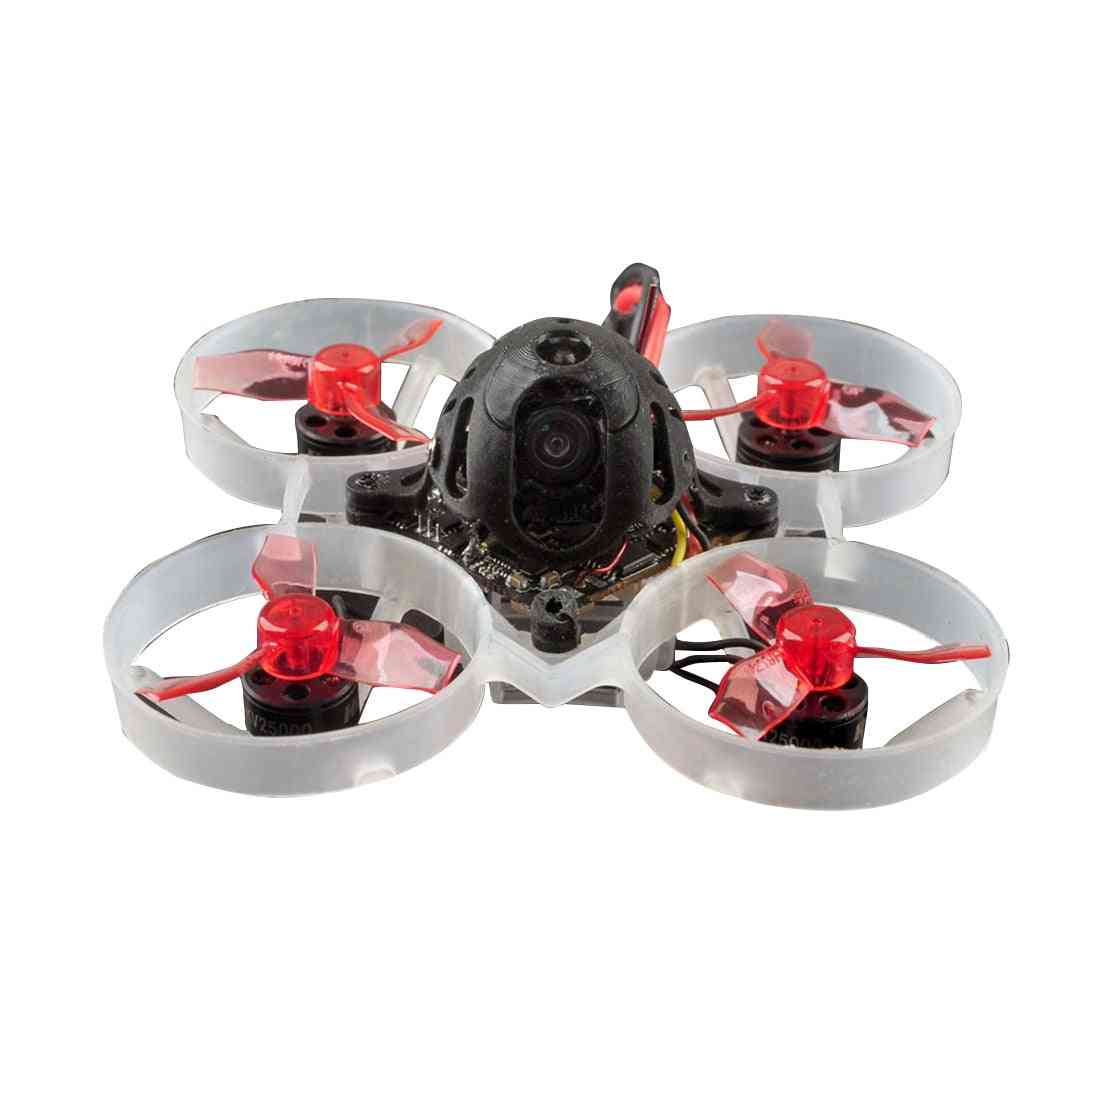 Závodný dron so 4 v 1 - jednoduché použitie